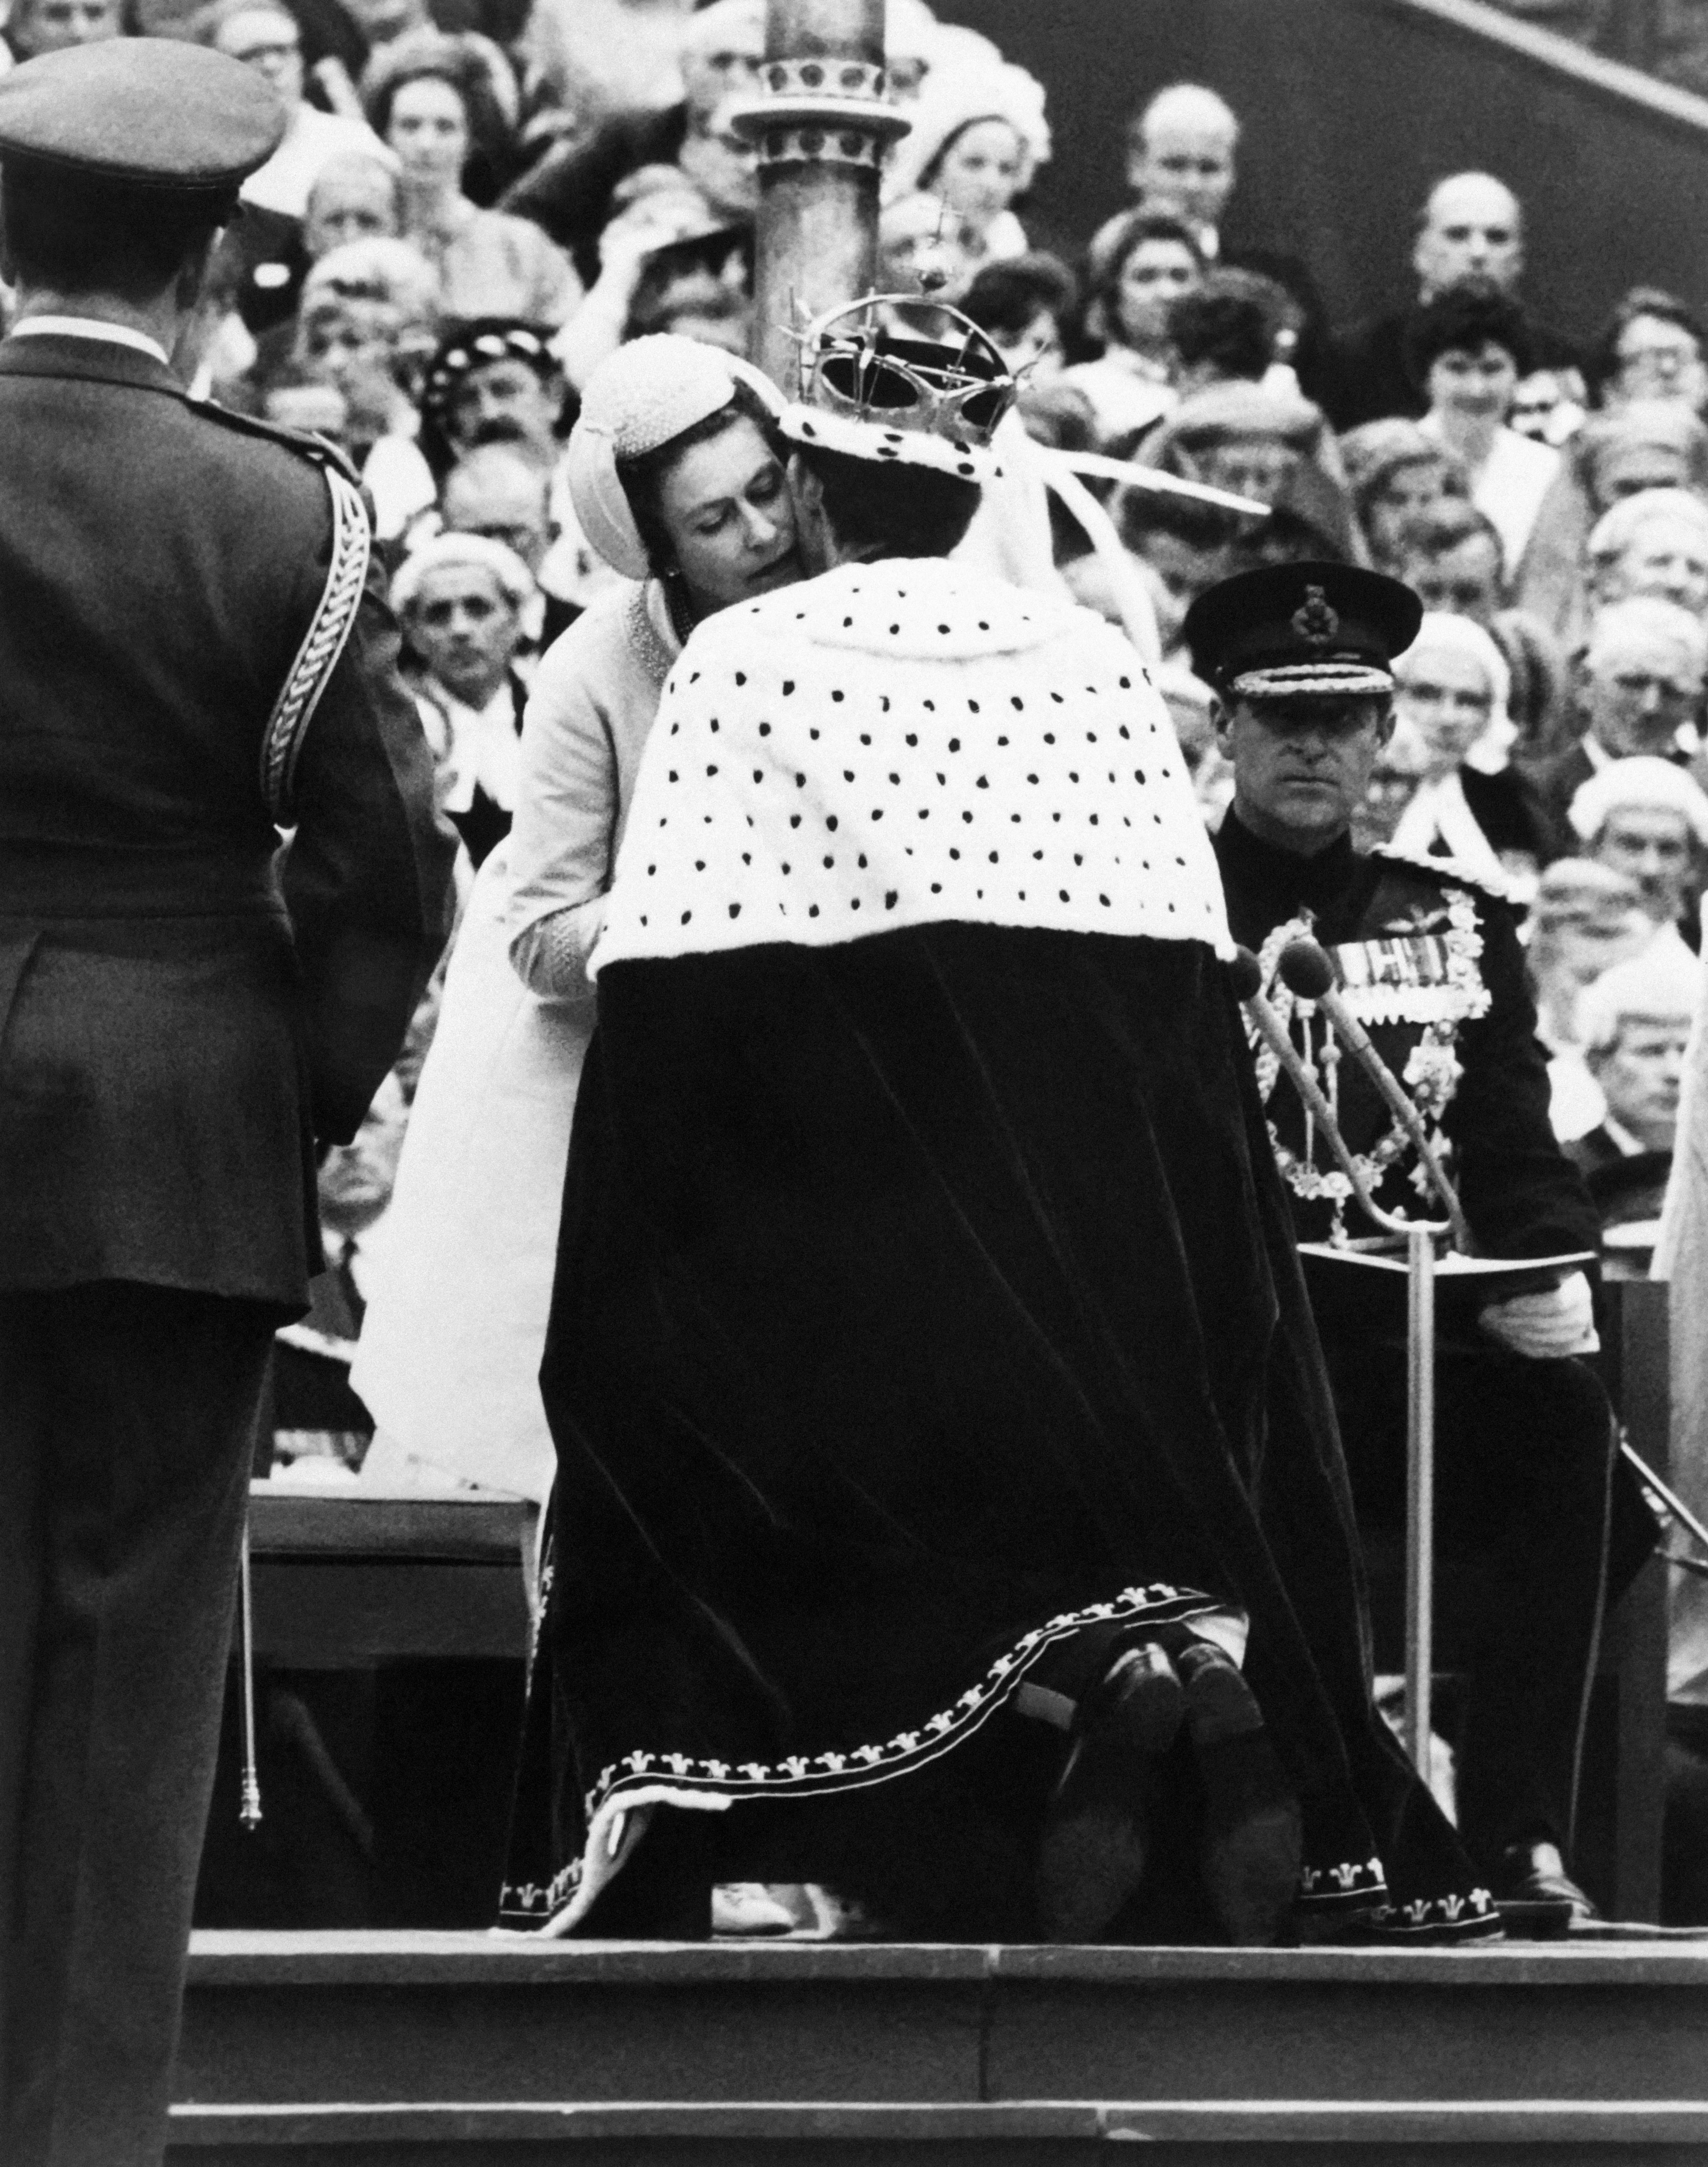 Il principe Carlo bacia sua madre, la regina Elisabetta II, durante la sua investitura come nuovo principe di Galles a Caernarfon il 1 luglio 1969